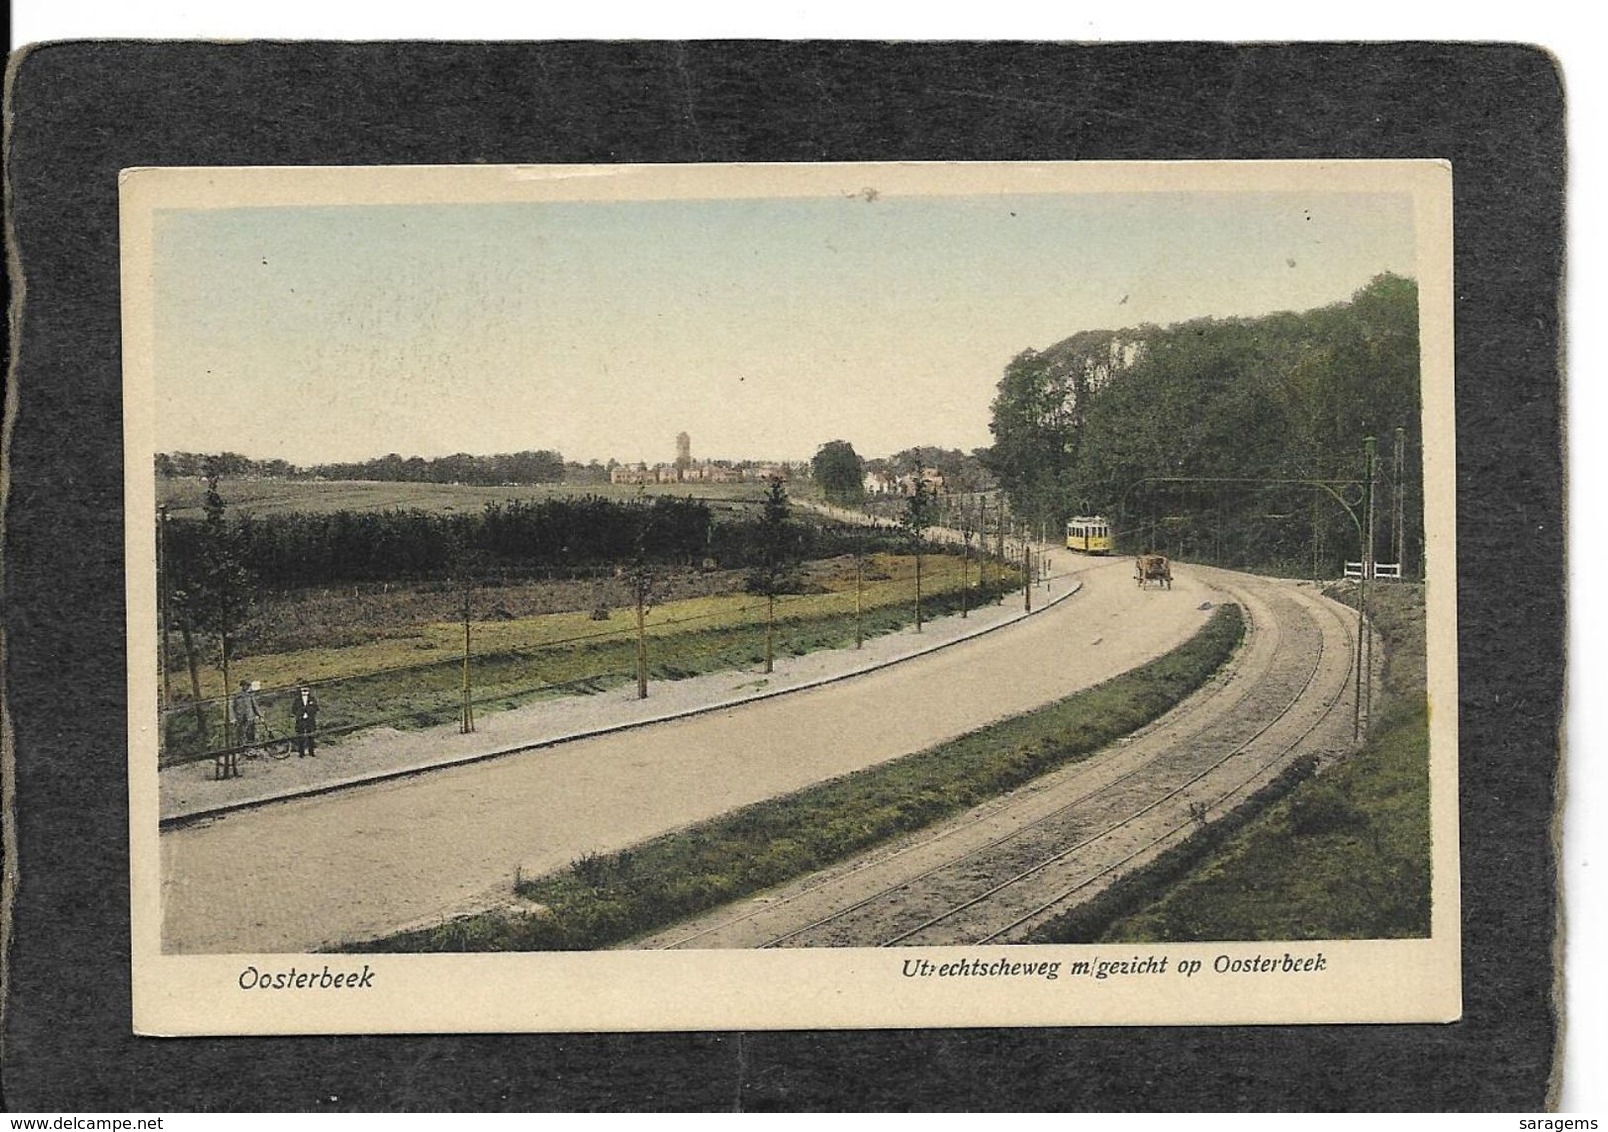 Oosterbeek,Netherlands-Utrechtscheweg M/Gezicht Op Oosterbeek 1910s - Antique Postcard - Oosterbeek